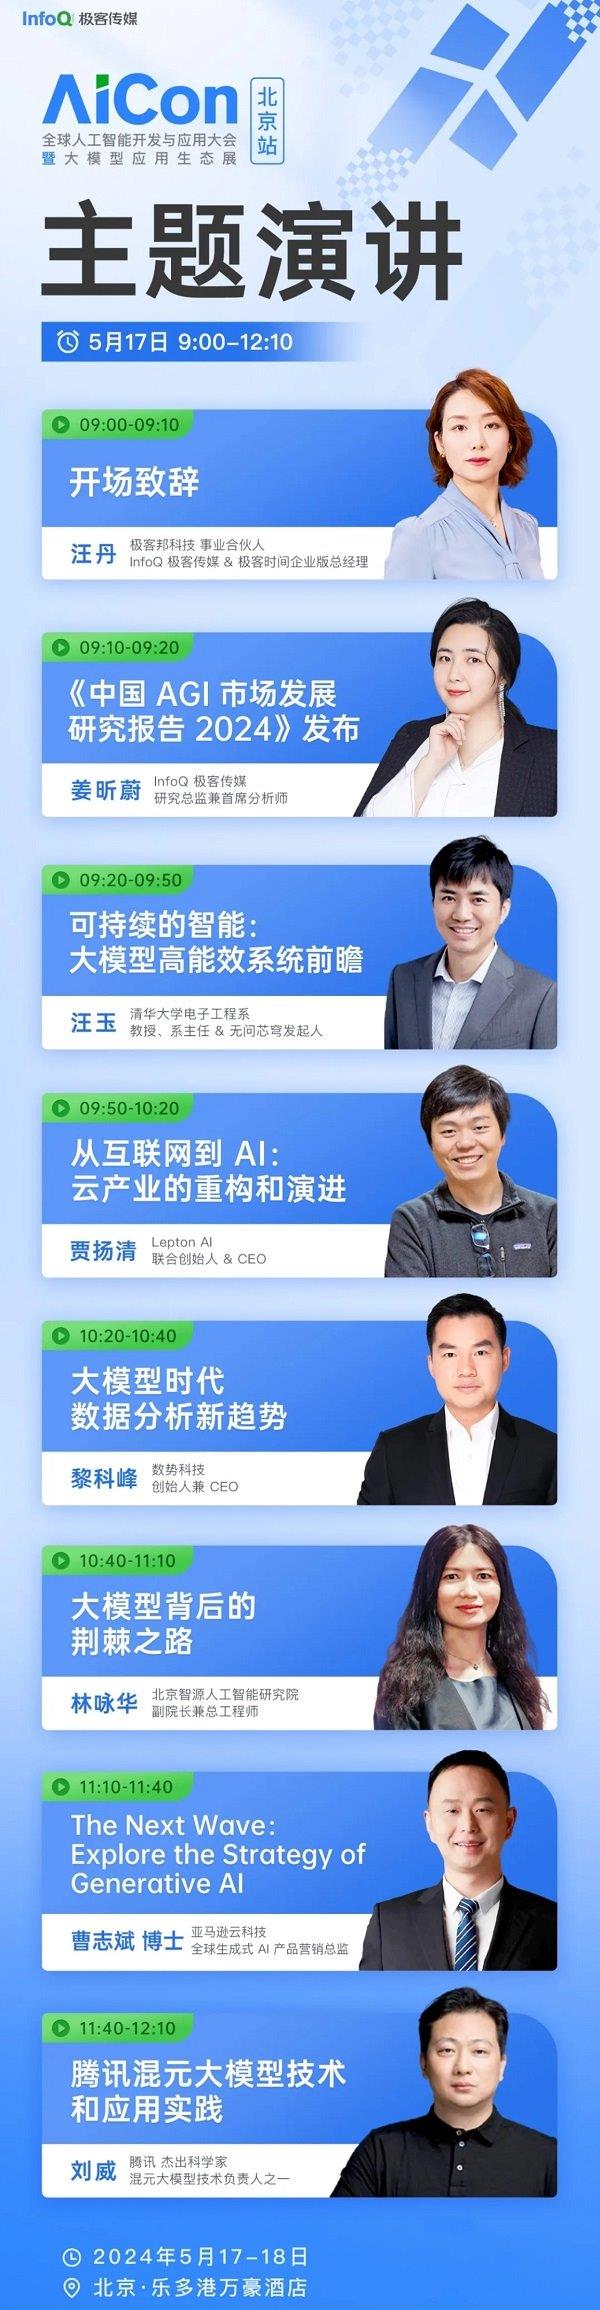 硅谷视野+中国实践 | AICon携AI黑科技登陆北京 